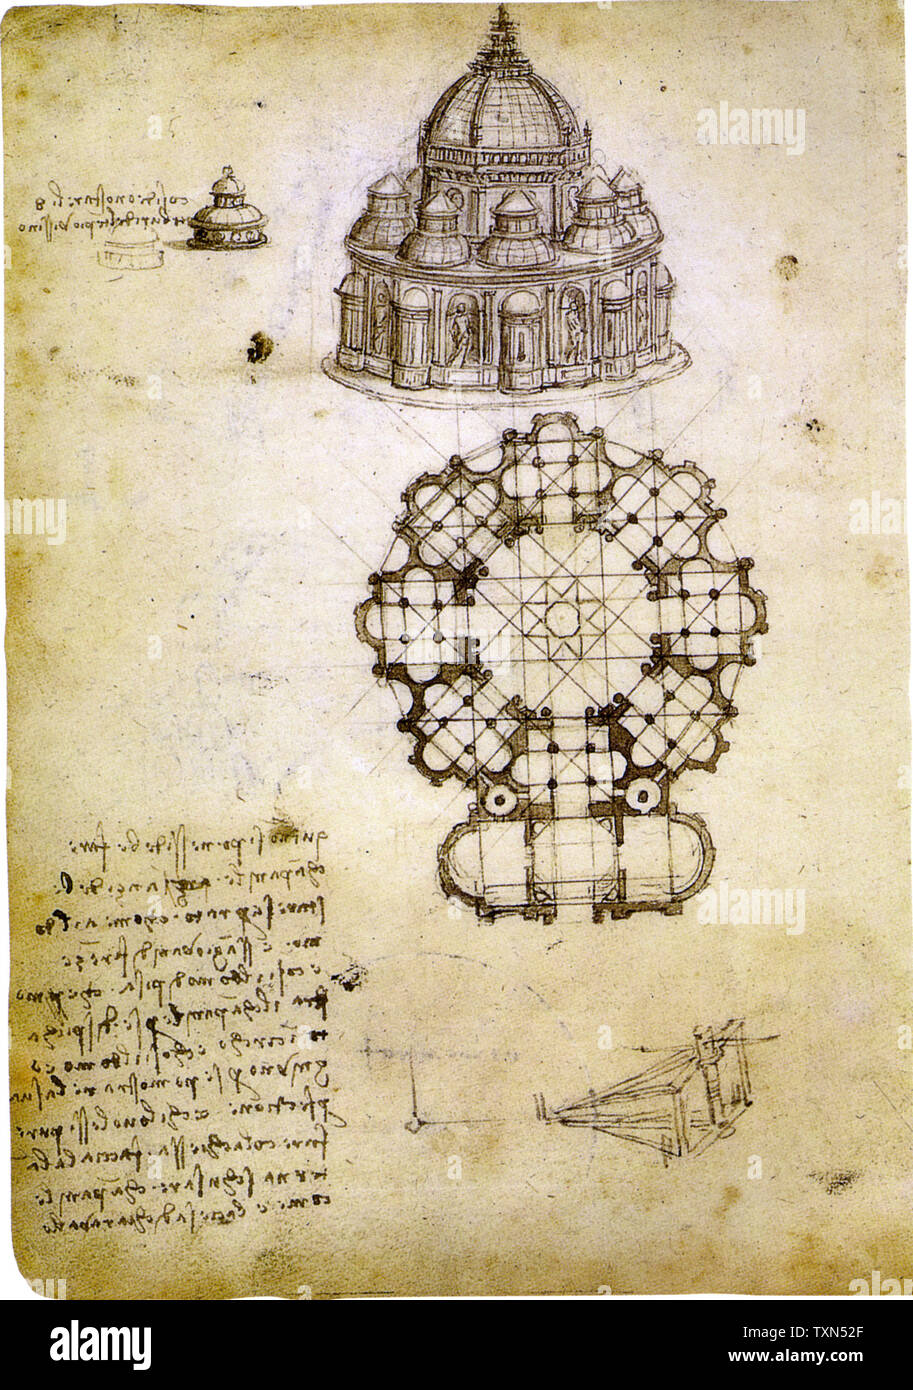 Leonardo Da Vinci, Design for the Institut de France, architectural drawing, circa 1488 Stock Photo